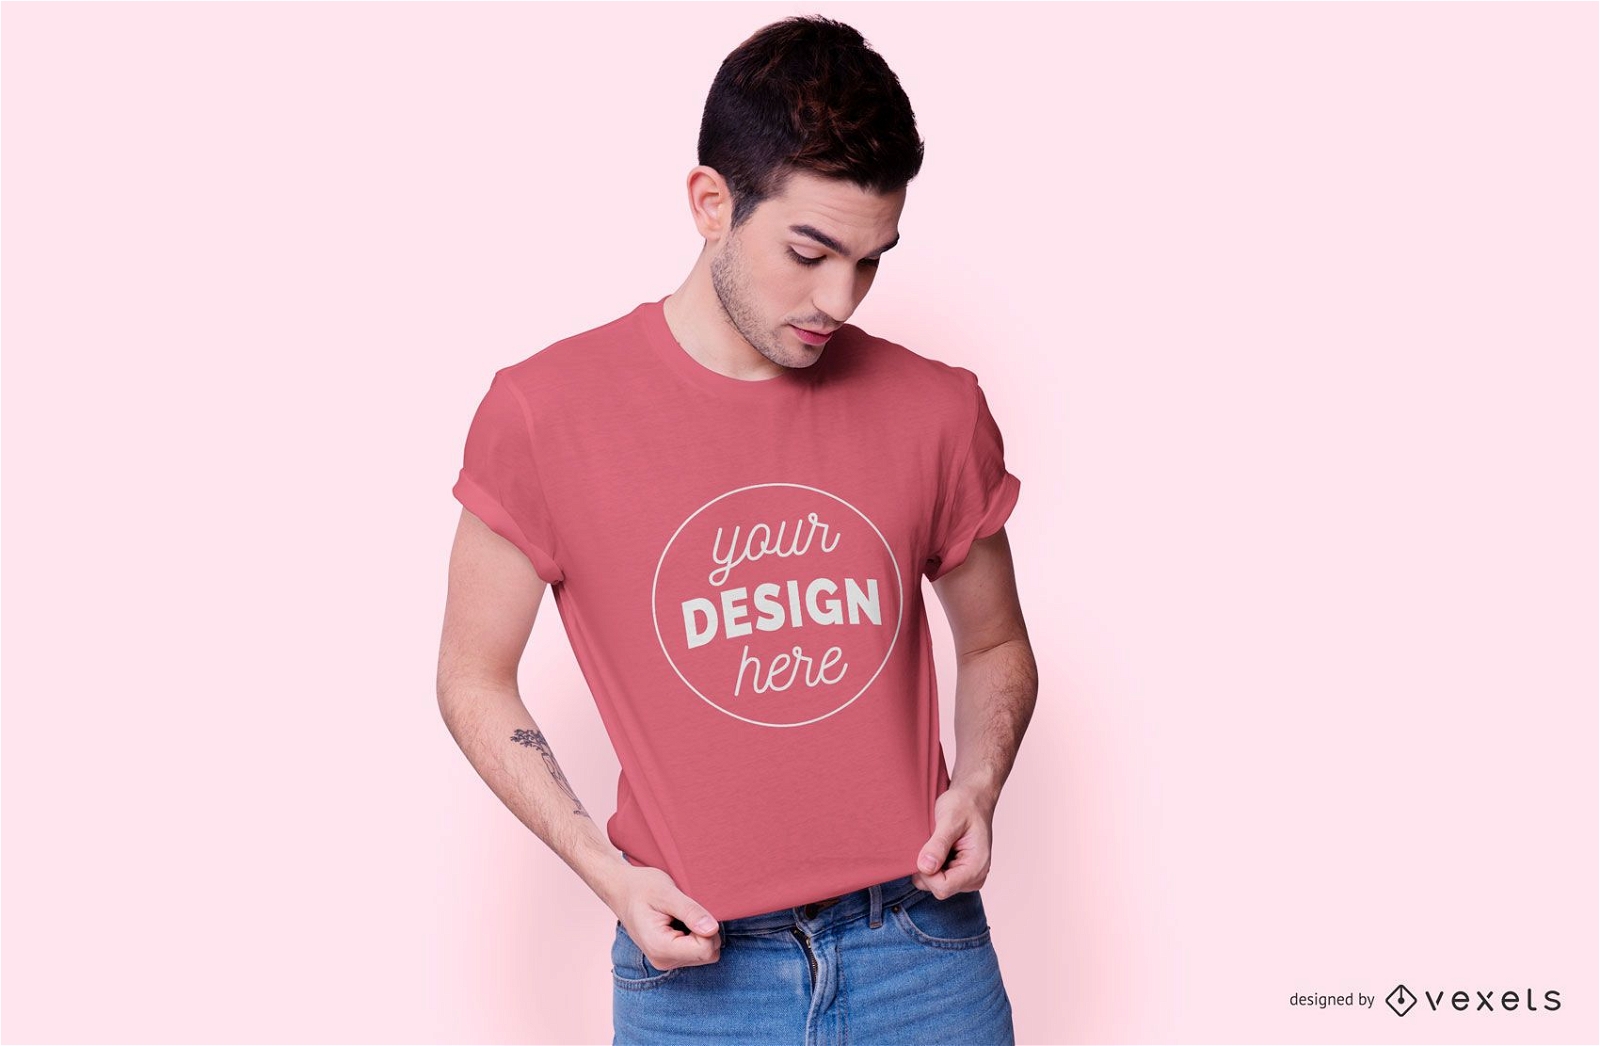 Download Male Model T-shirt Mockup Design - PSD Mockup Download